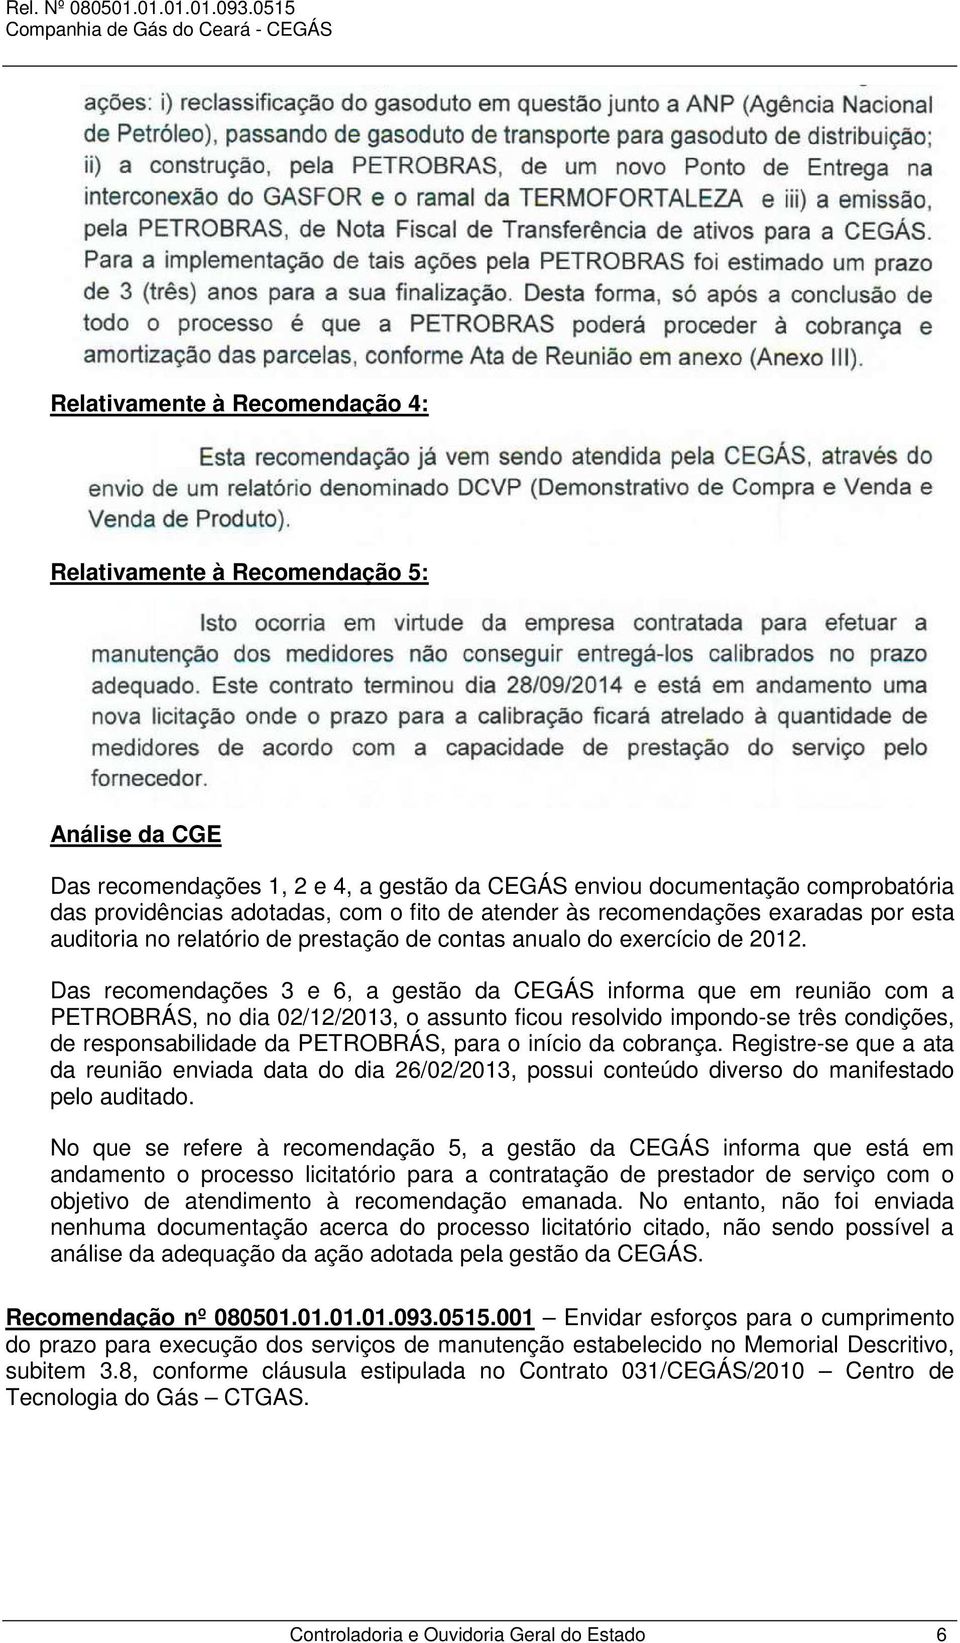 Das recomendações 3 e 6, a gestão da CEGÁS informa que em reunião com a PETROBRÁS, no dia 02/12/2013, o assunto ficou resolvido impondo-se três condições, de responsabilidade da PETROBRÁS, para o